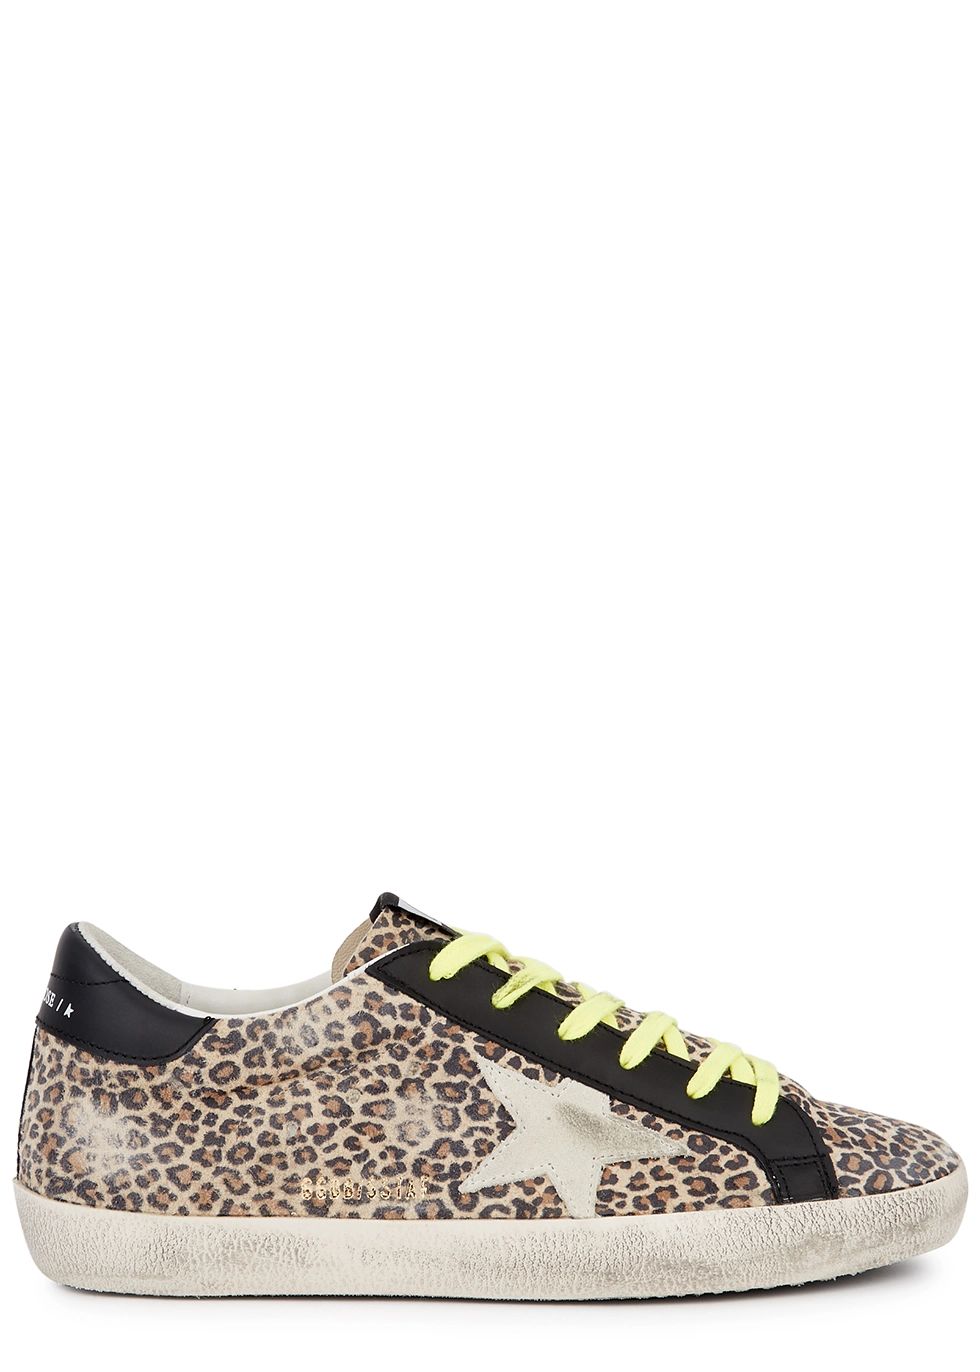 Superstar leopard-print suede sneakers | Harvey Nichols (Global)